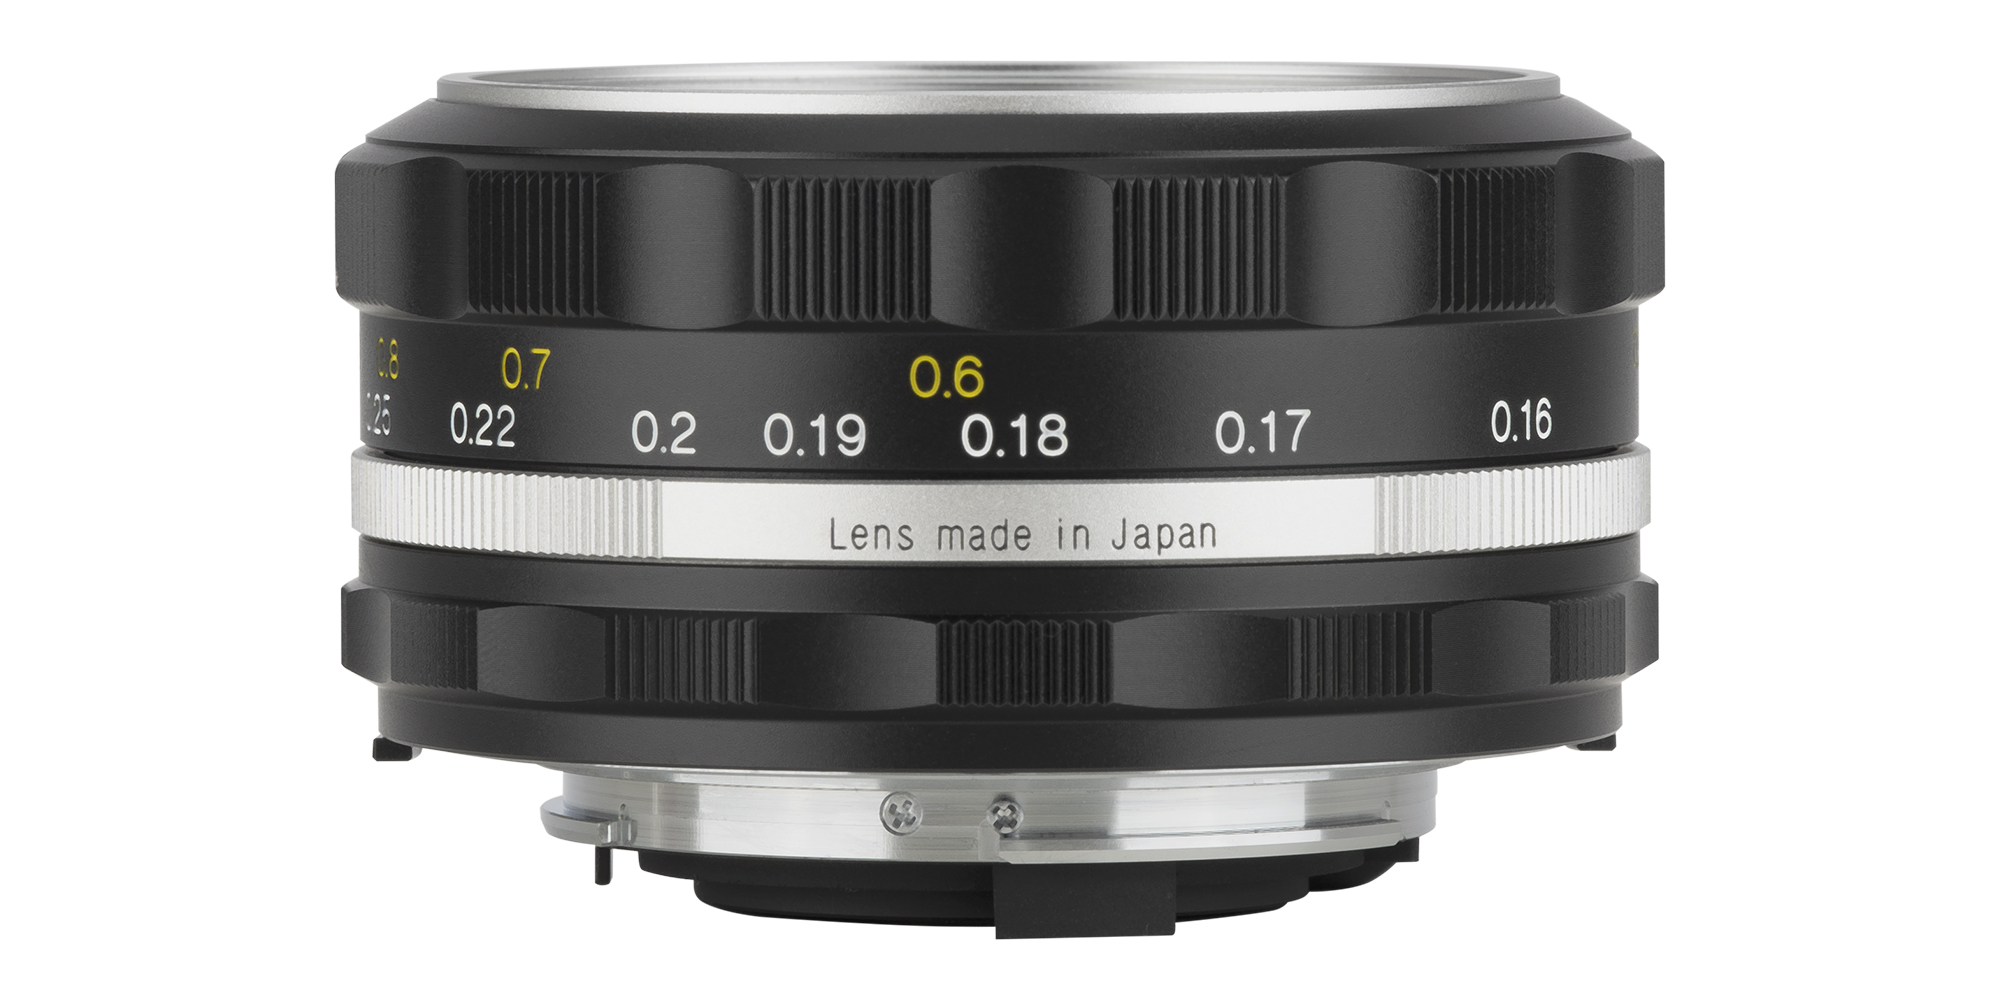 Voigtlander Color Skopar SL IIs 28 mm f/2.8 lens for Nikon F - silver - Wide, but with care